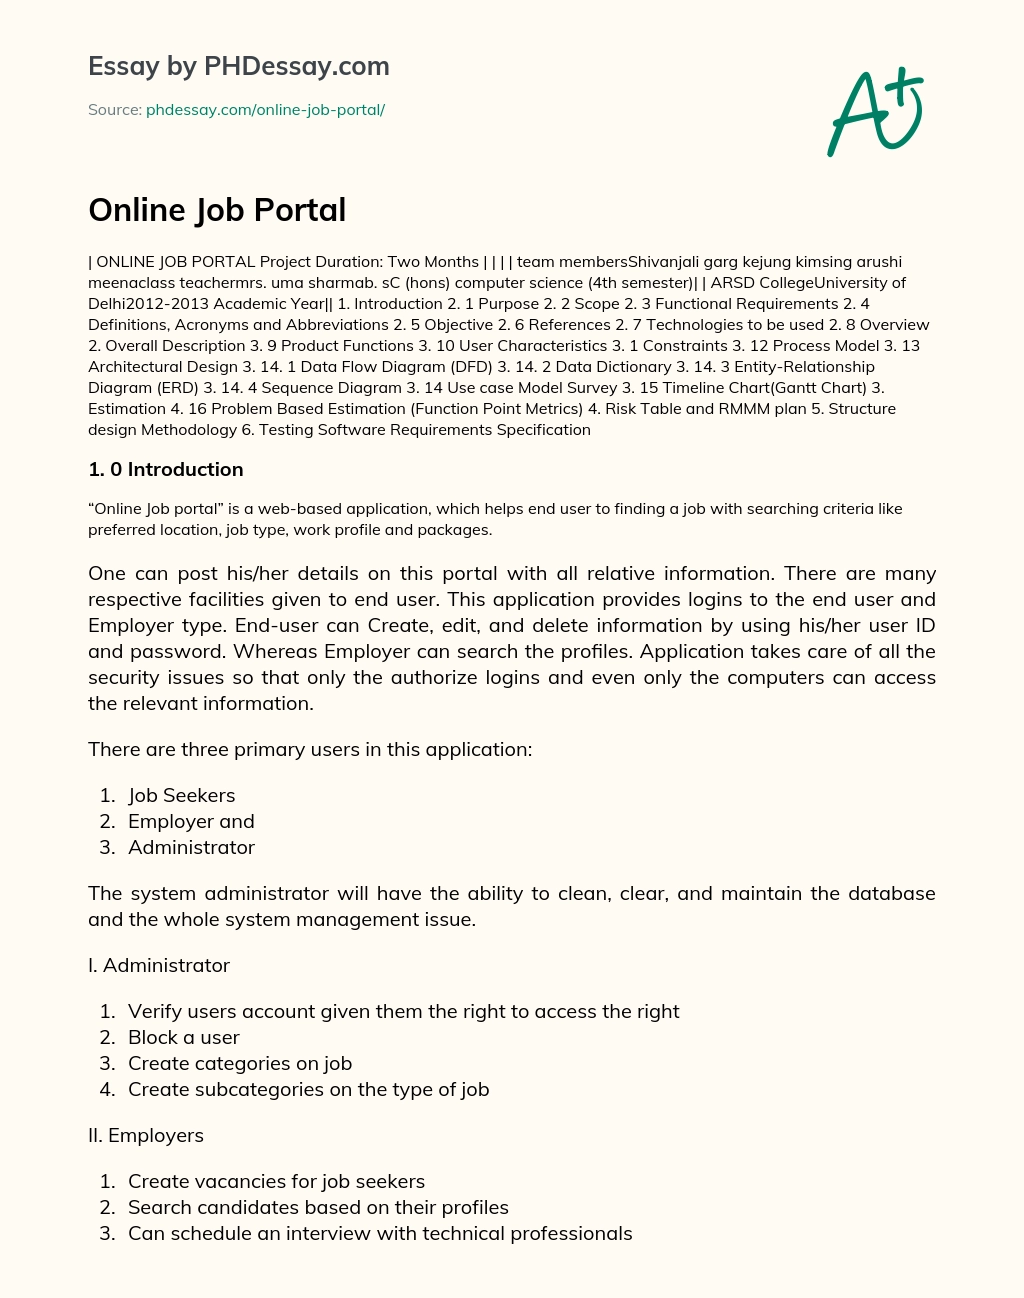 Online Job Portal essay